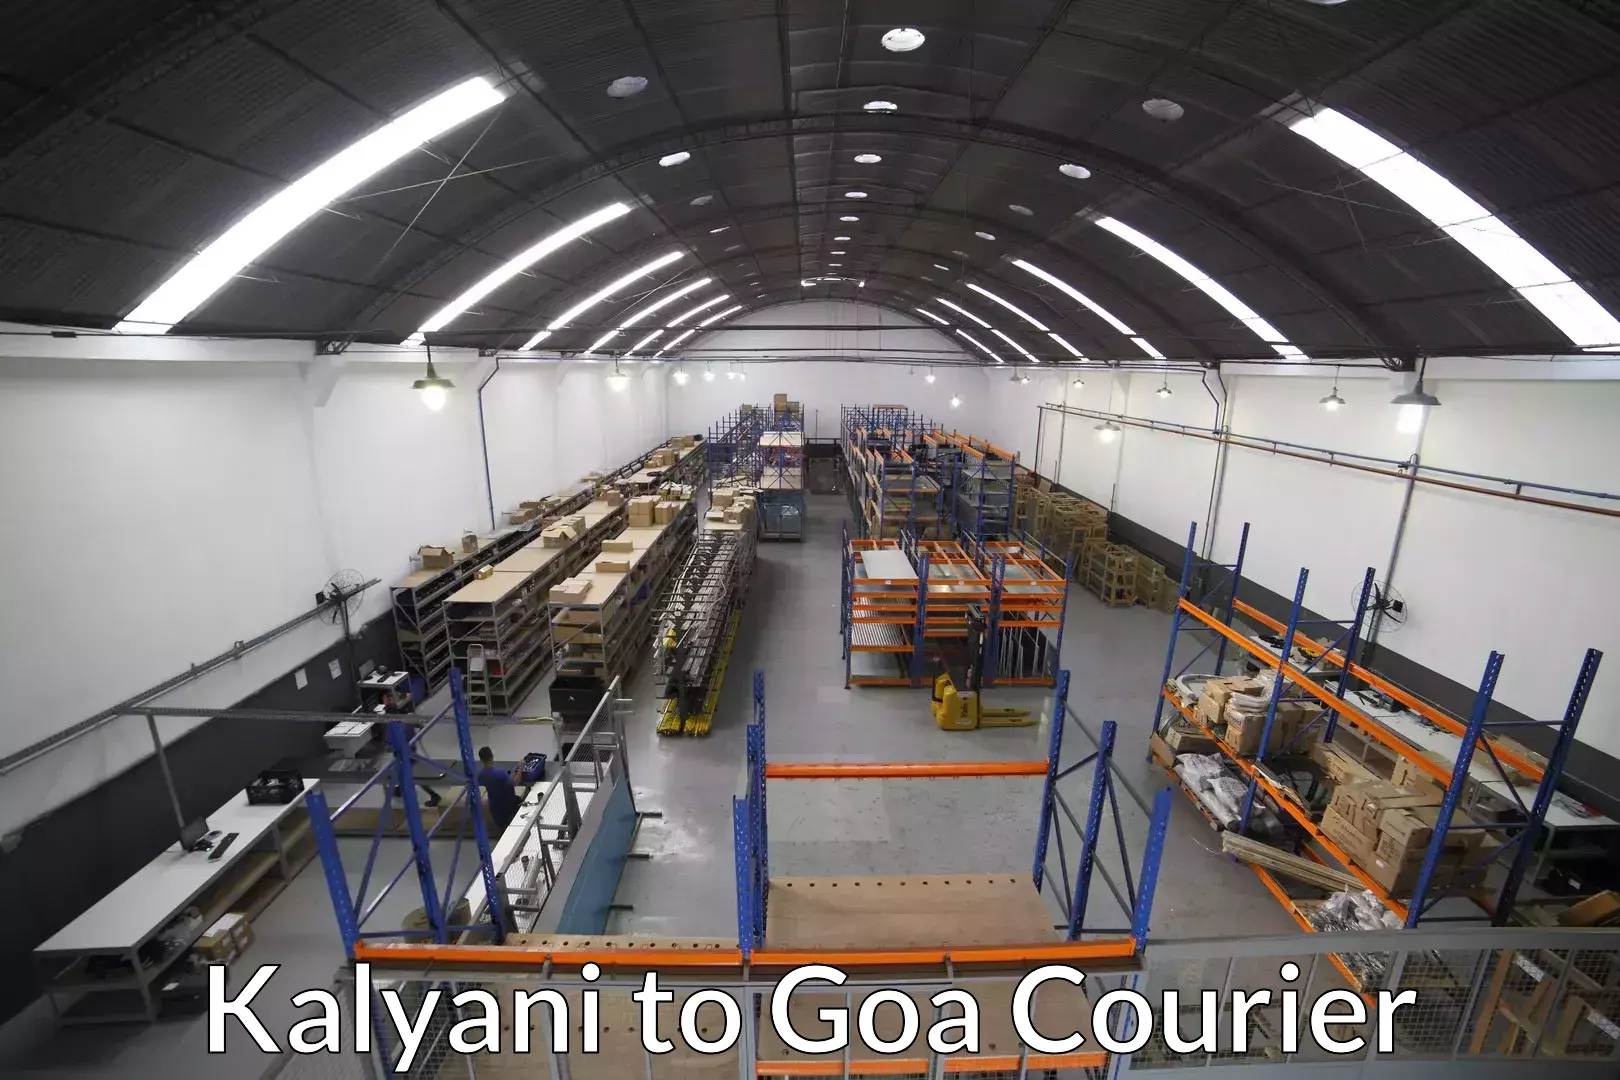 Customized relocation services Kalyani to Goa